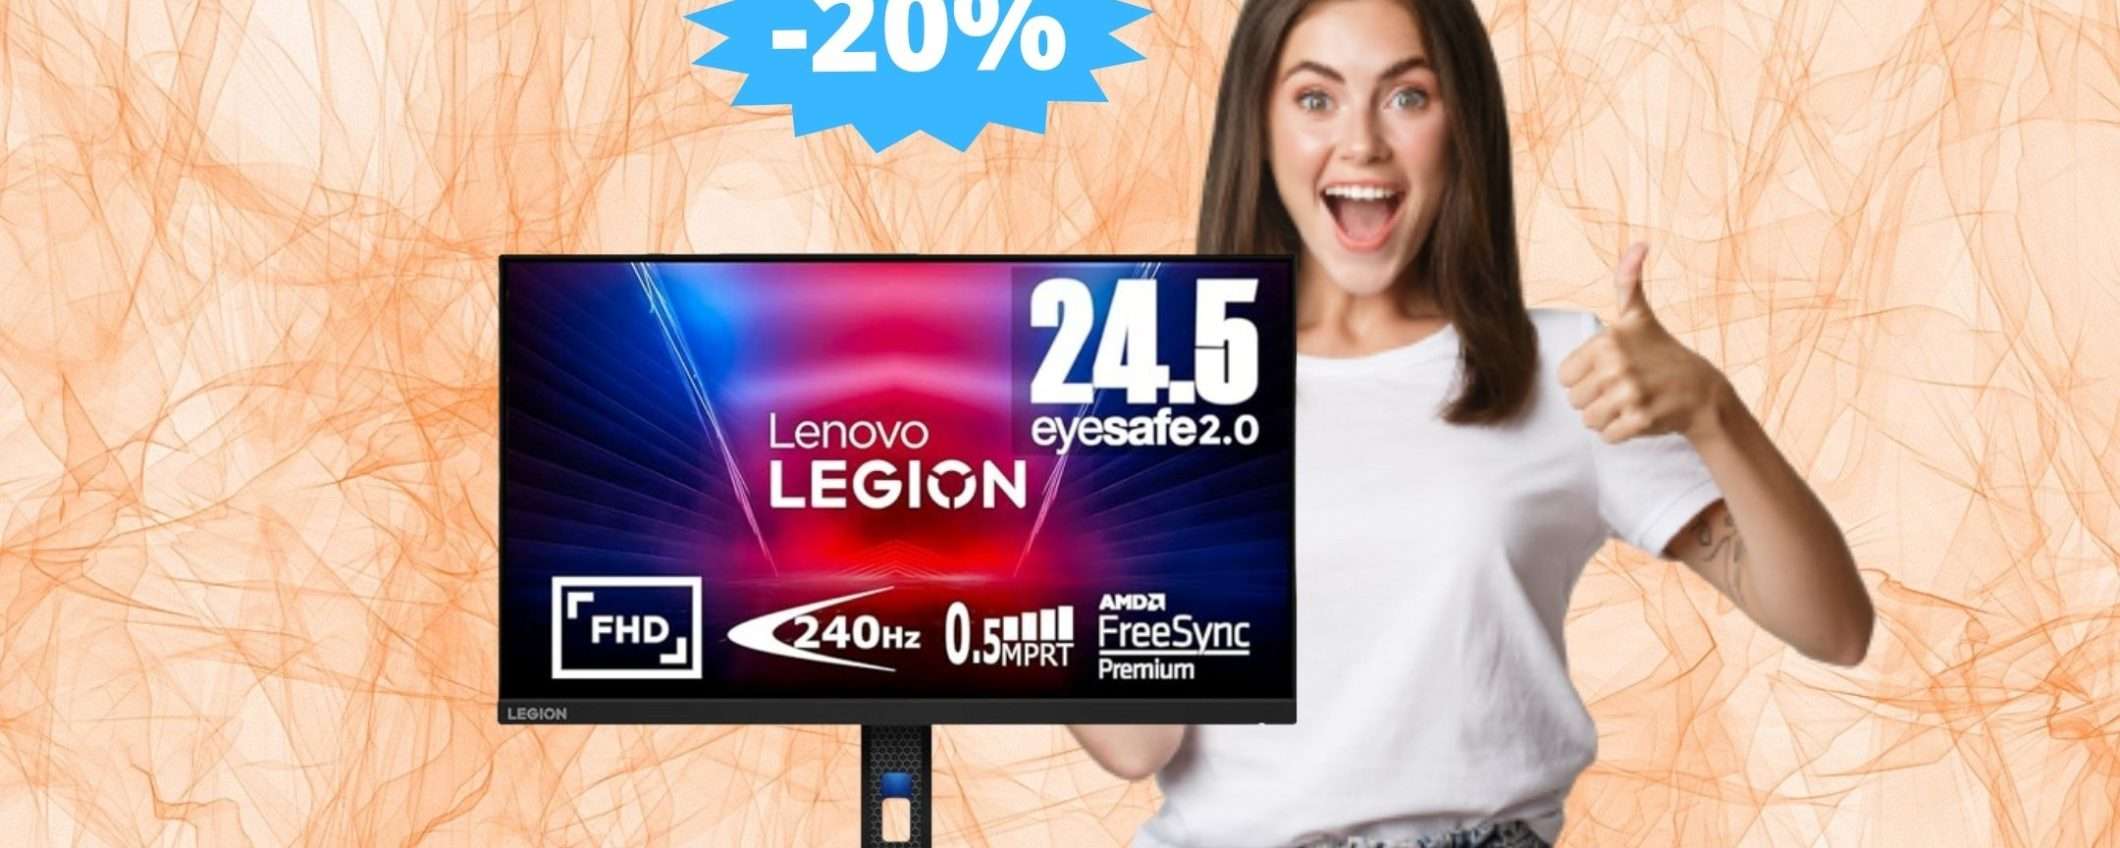 Monitor Lenovo Legion: il GAMING a portata di mano (-20%)